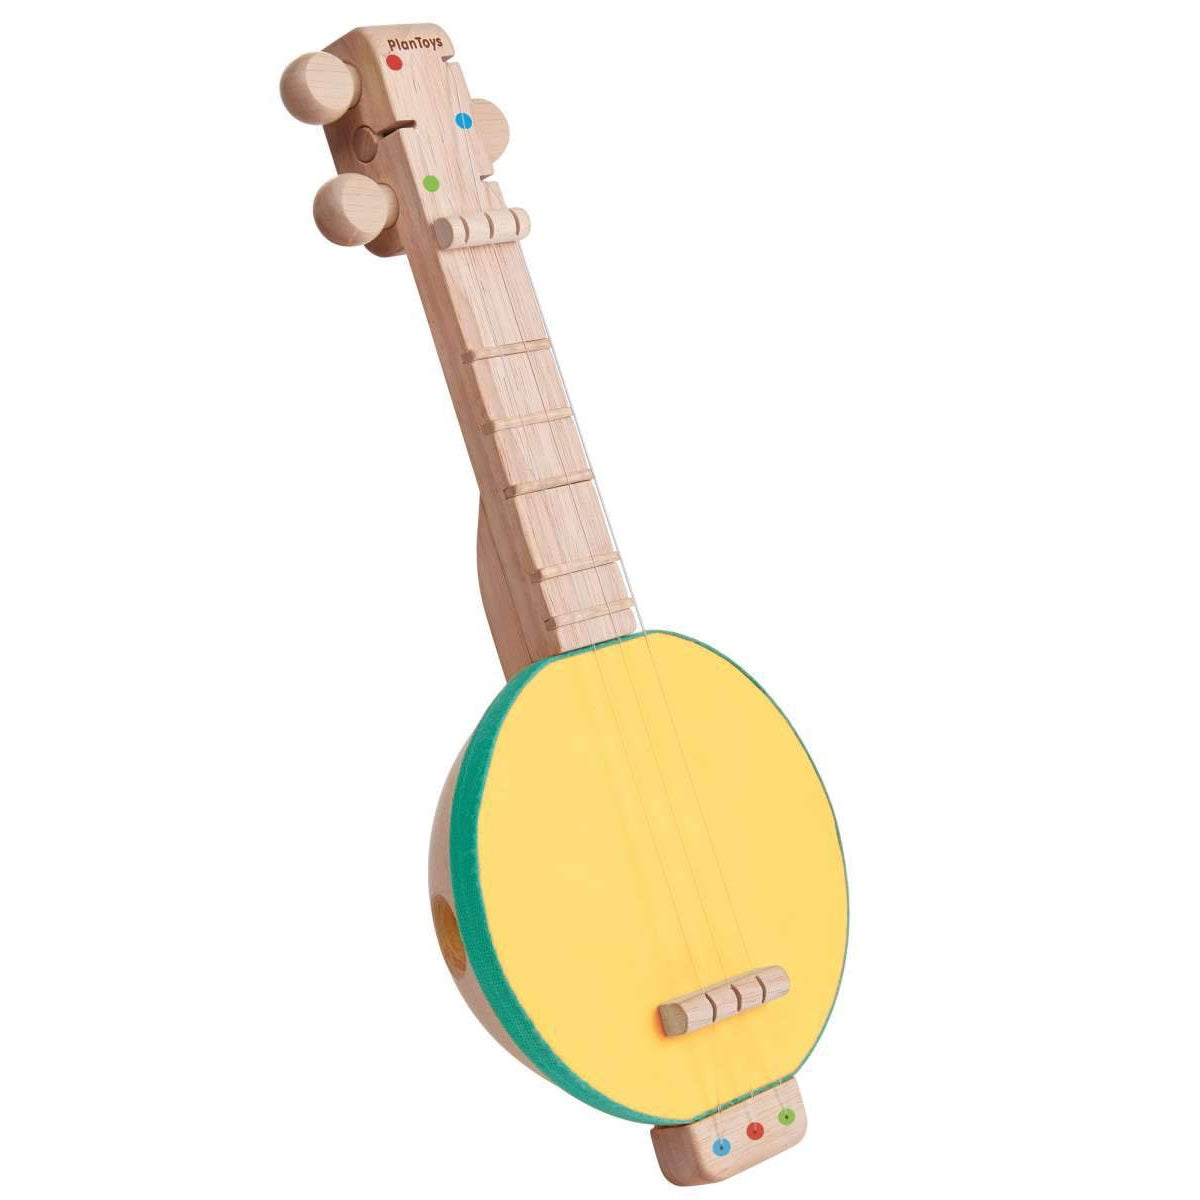 Ein feines, kindgerechtes Musikinstrument für Ihren Sprößling. Die 3 Seiten der Banjolele lassen sich angenehm weich anspielen, sodass die Kleinen schnell herausfinden, wie sie mit der Banjolele am besten musizieren können.  Die Größe und Form der PlanToys Banjo liegt wunderbar in der Kinderhand. 